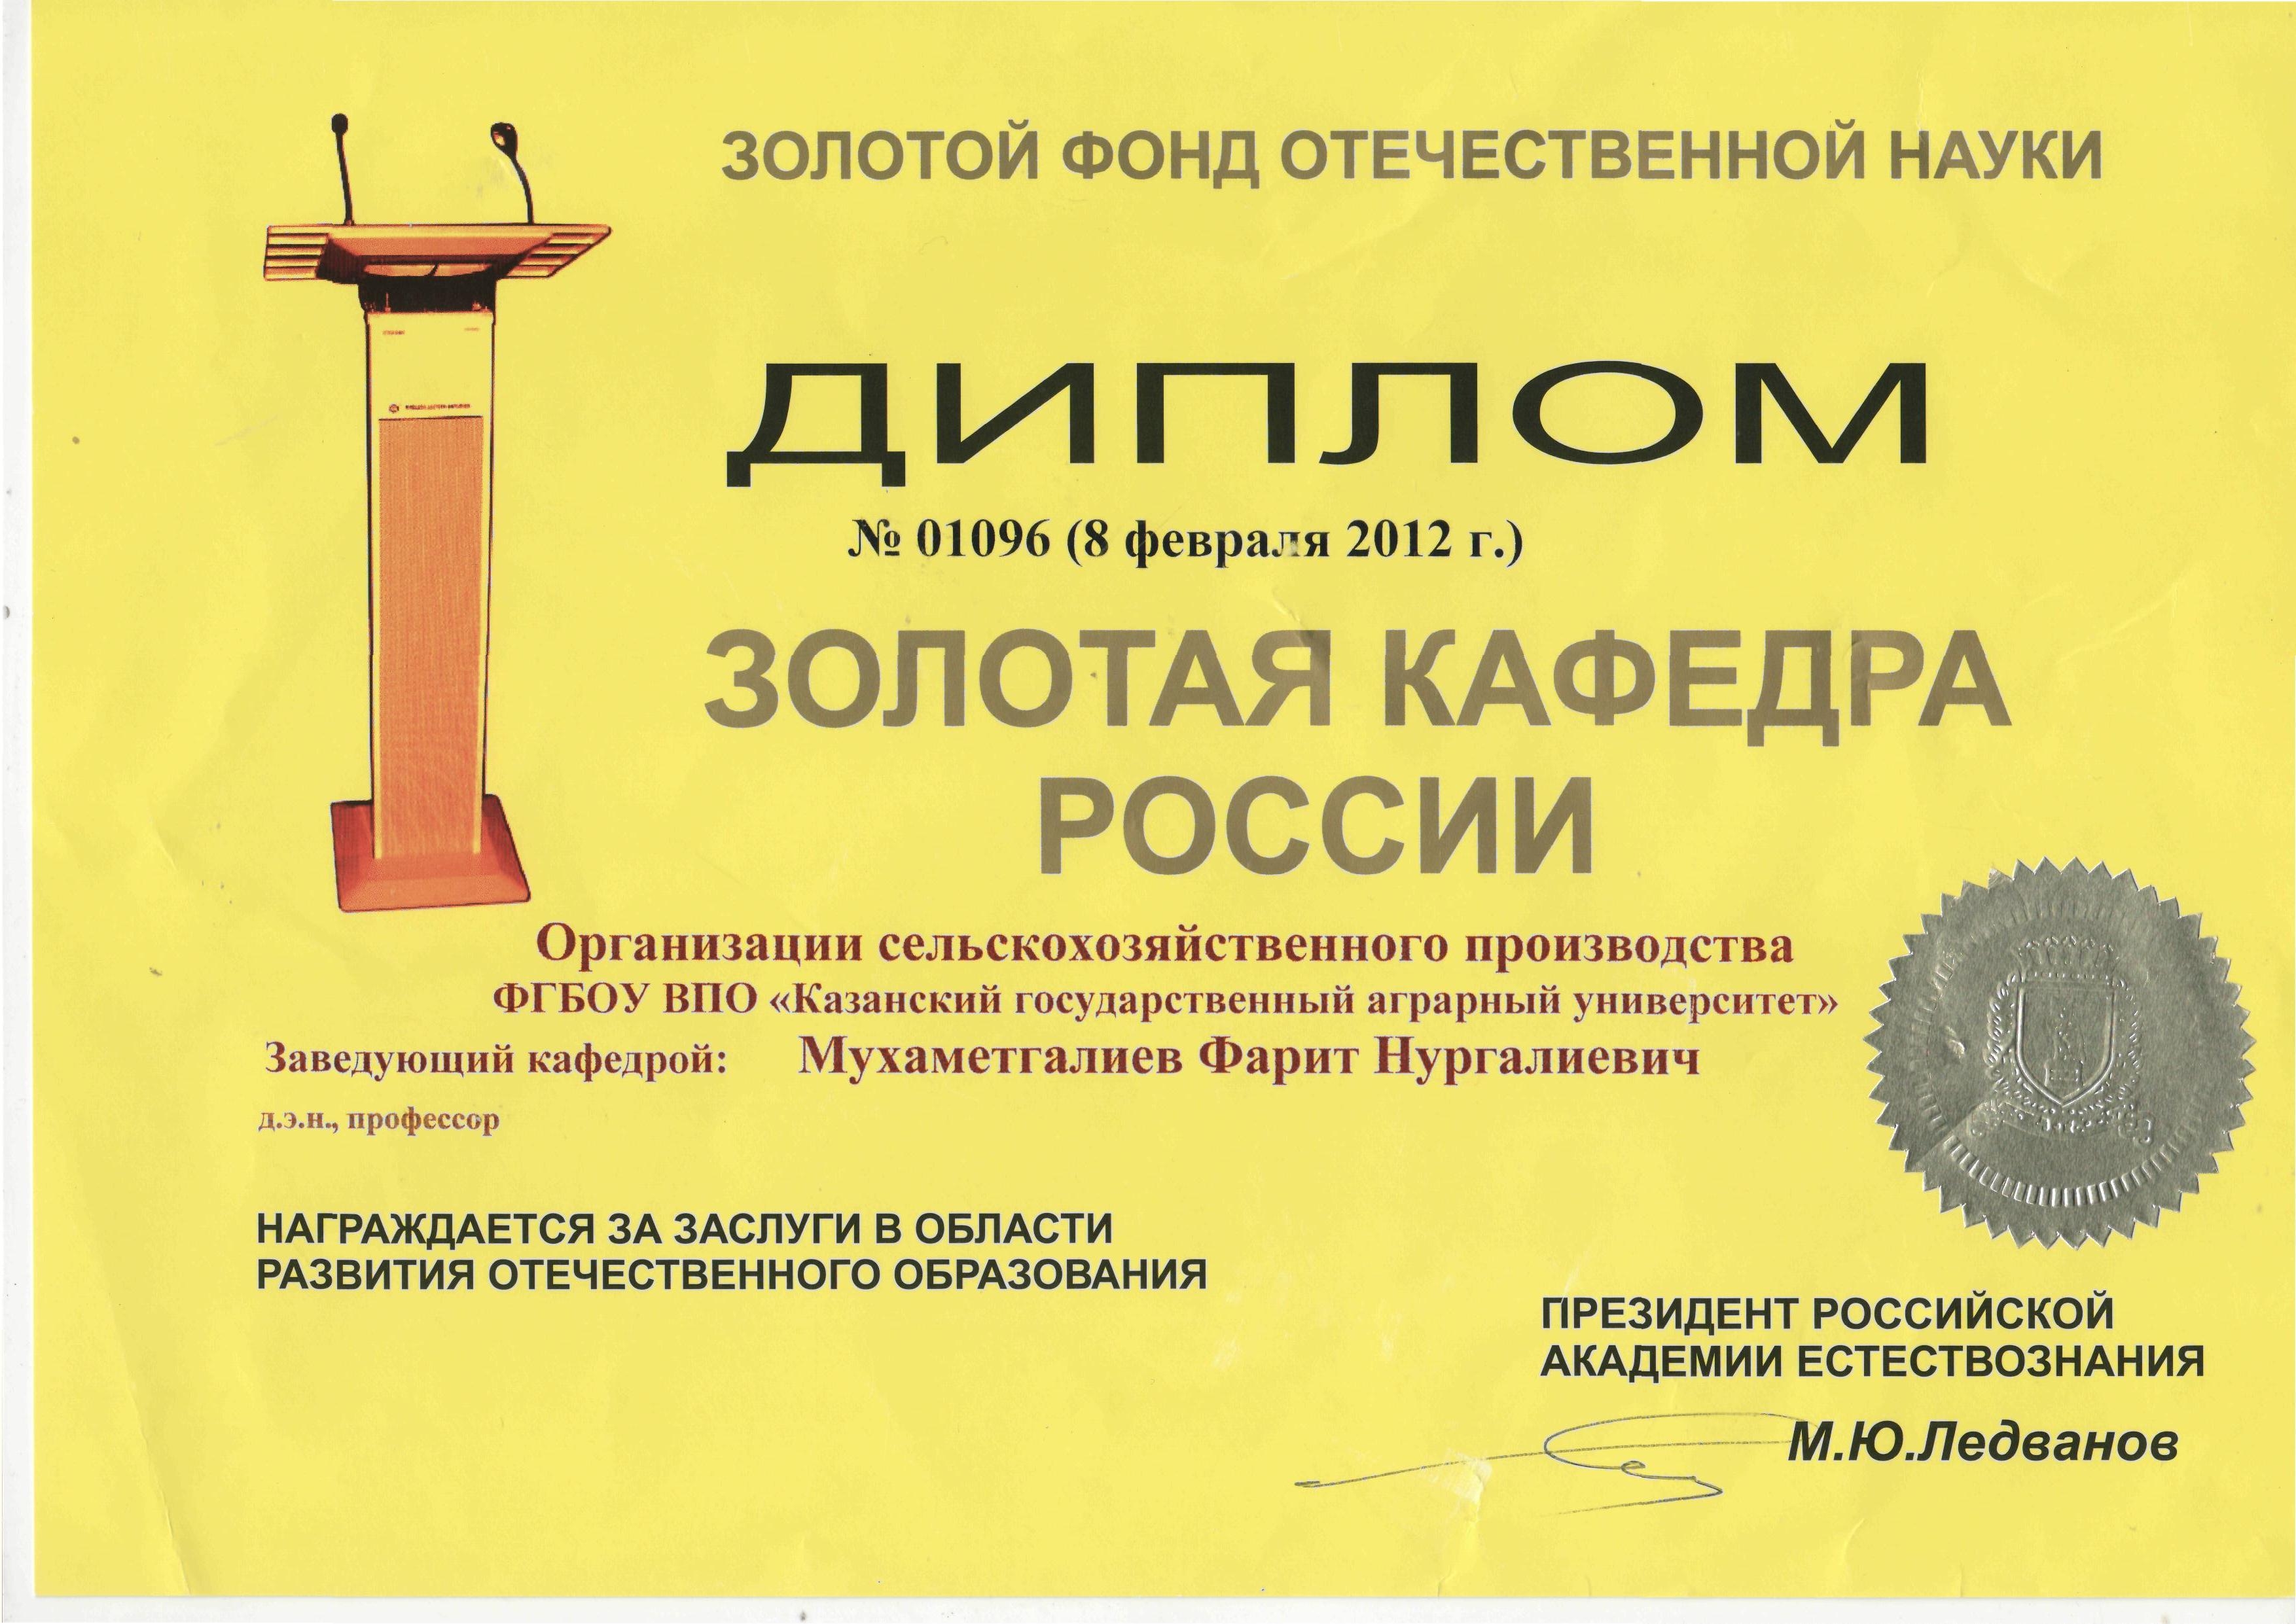 В 2012 году решением Президиума Российской Академии Естествознания за заслуги в области отечественного образования кафедра награждена дипломом 